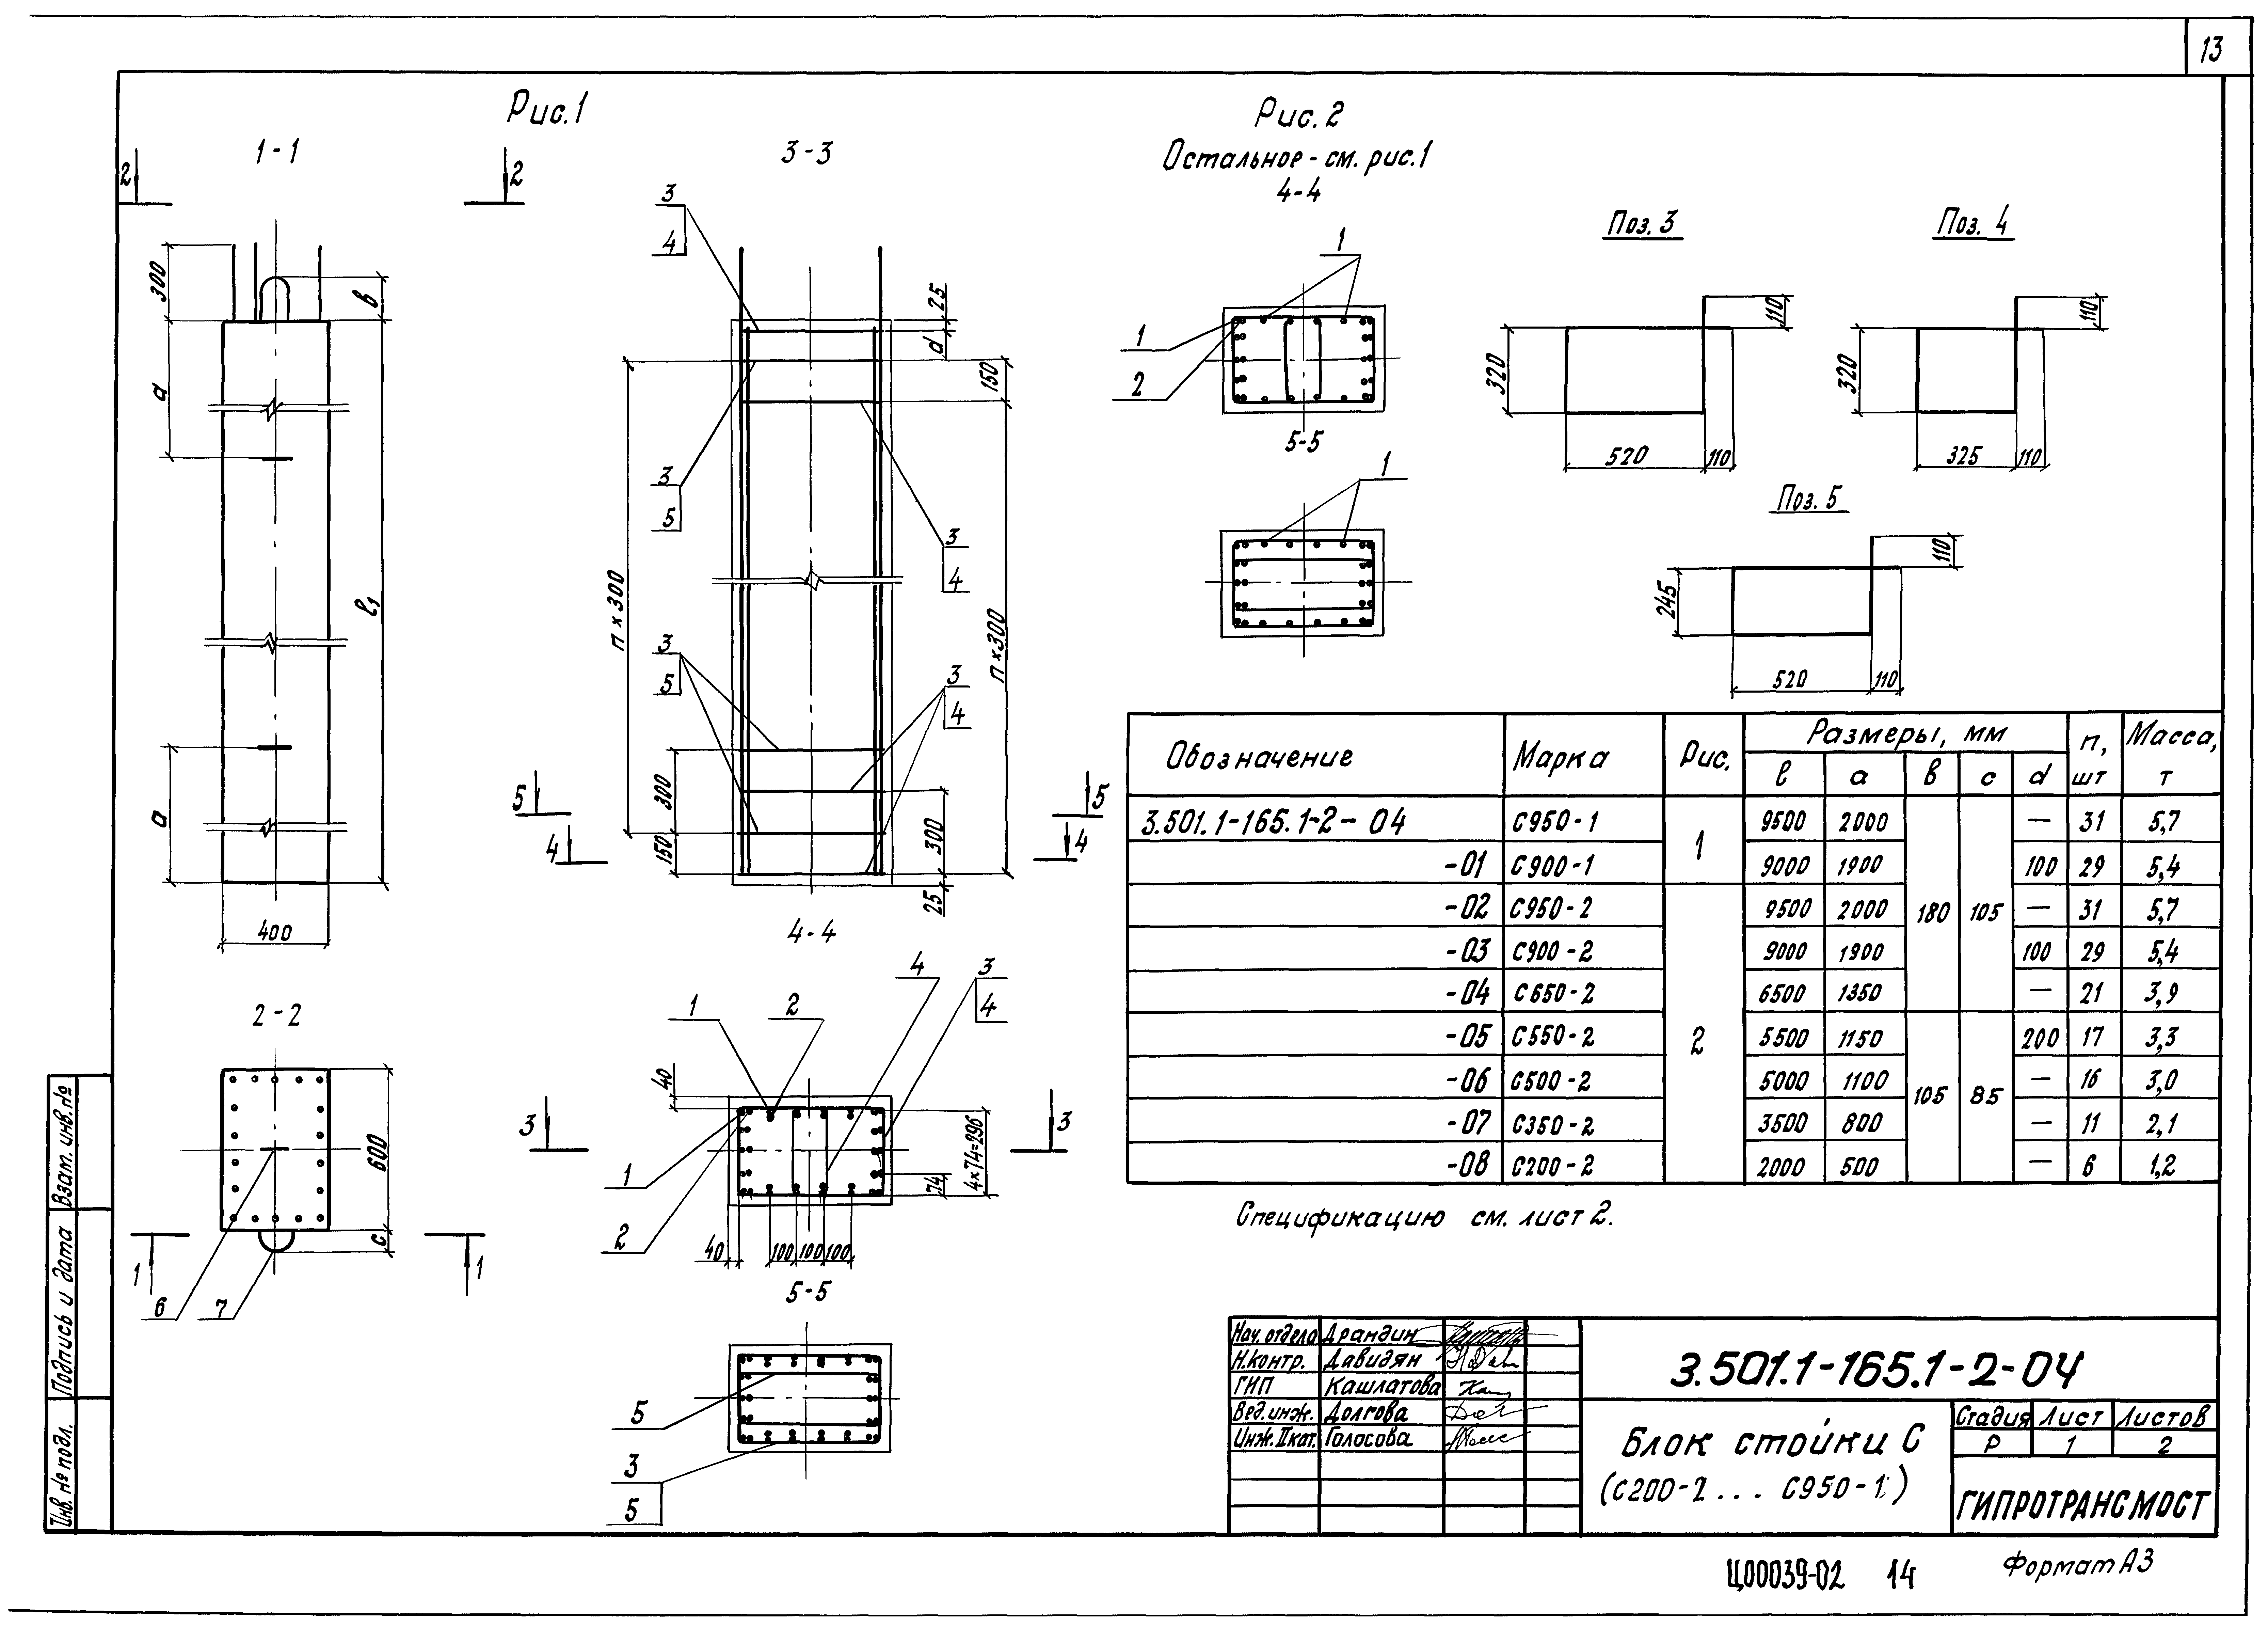 Блок стойки С350-2 Серия 3.501.1-165 Выпуск 1-2